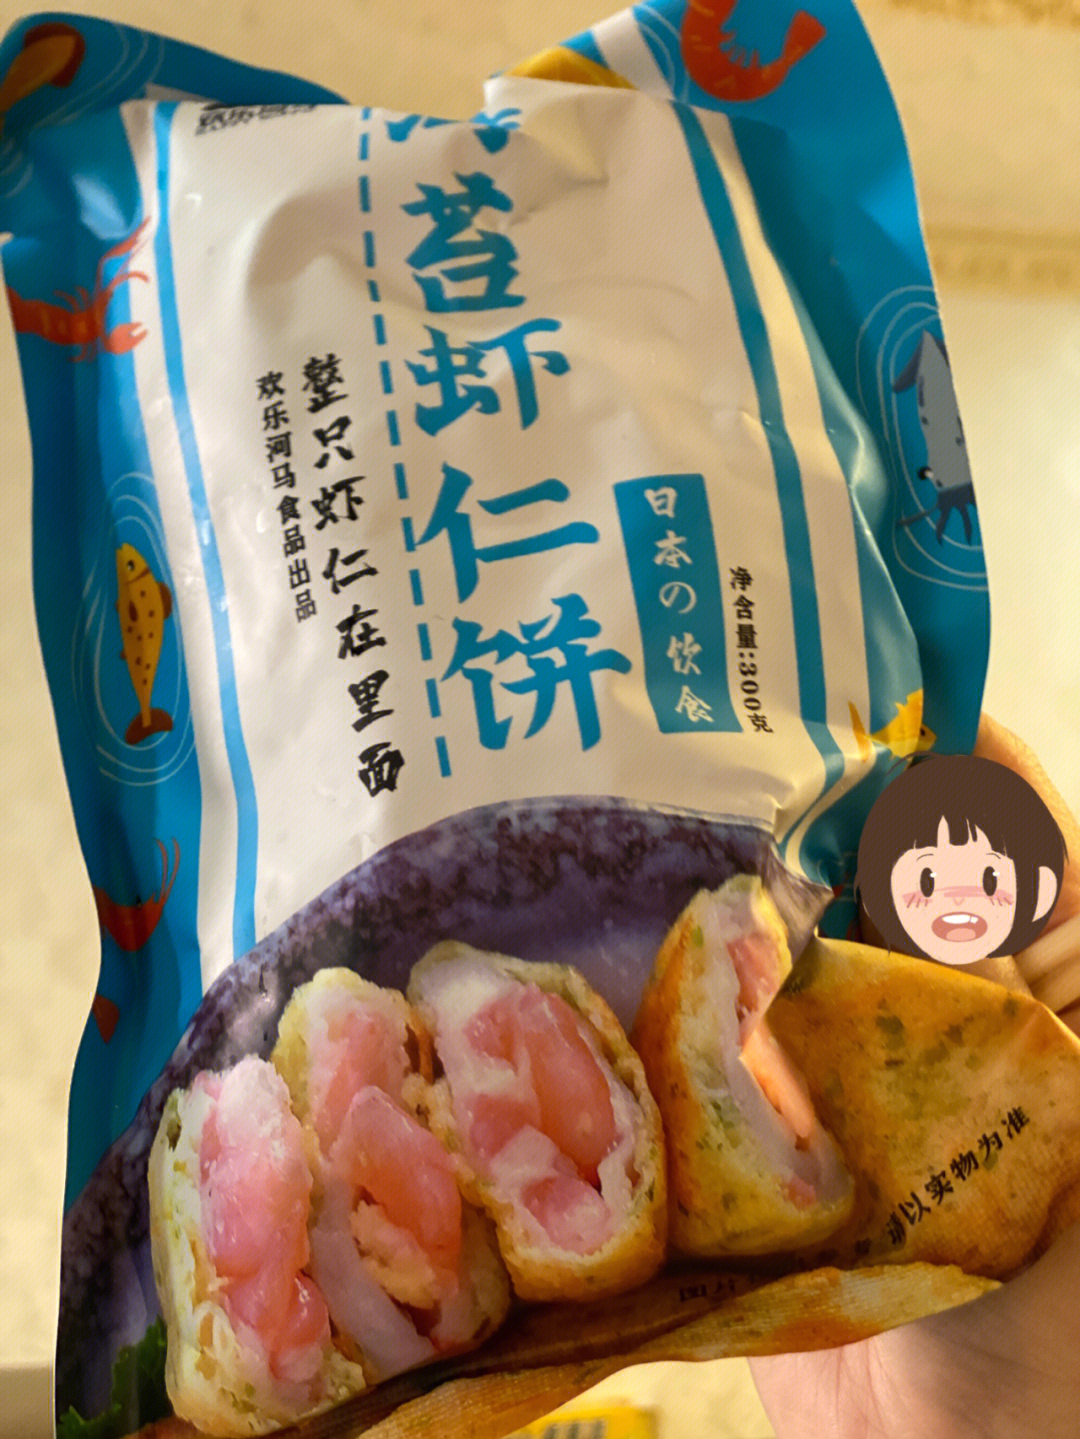 空气炸锅美食这个海苔虾仁饼太好吃啦